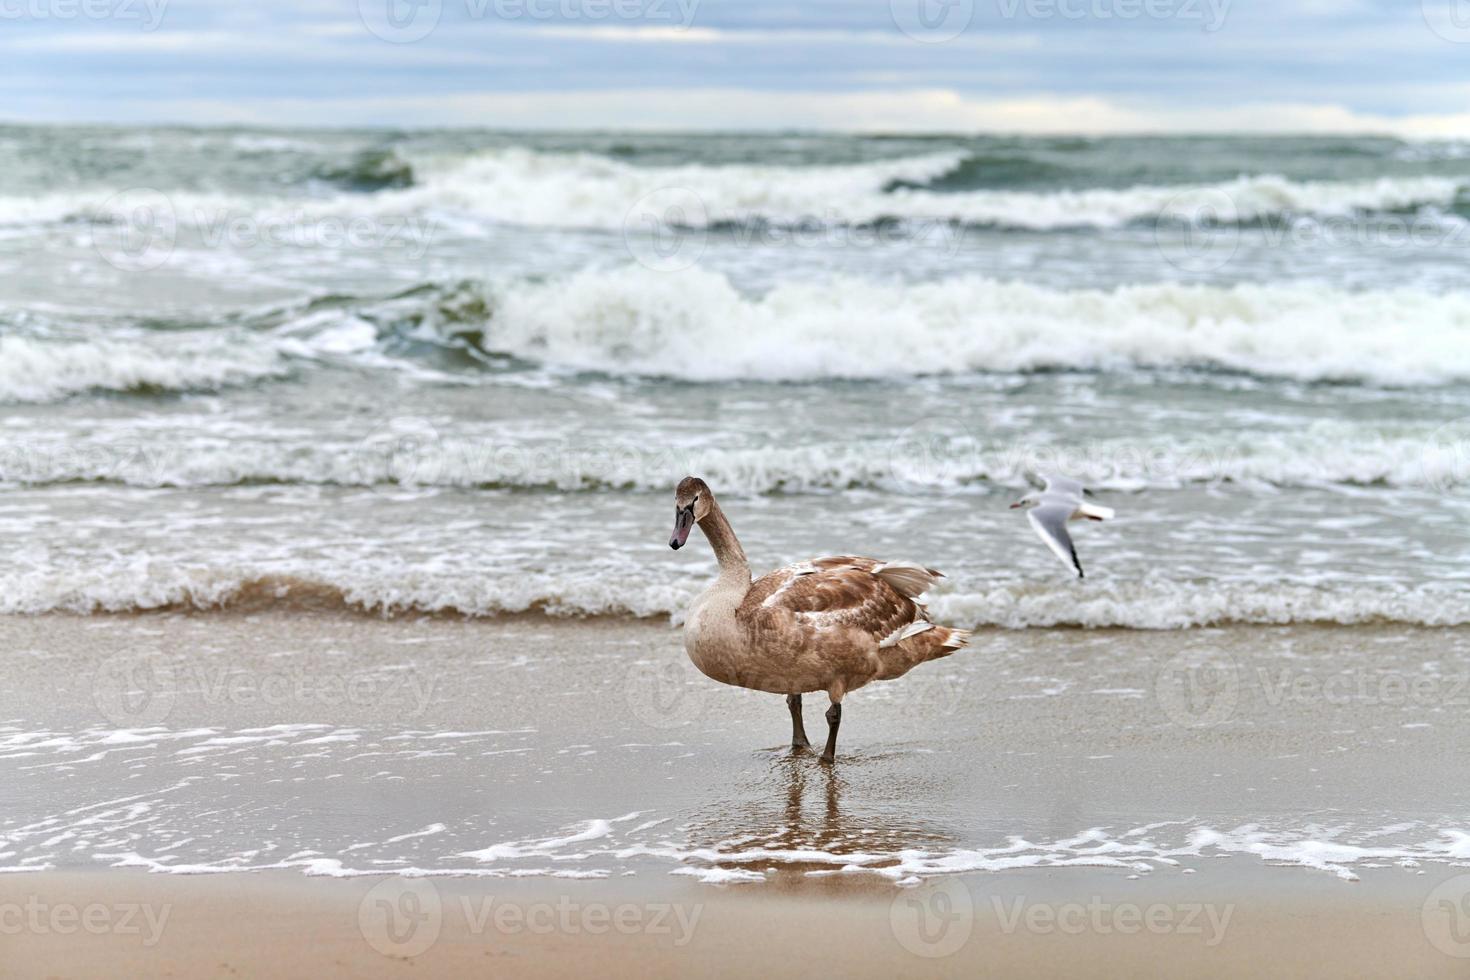 jovem cisne marrom caminhando pelo mar Báltico, close-up foto